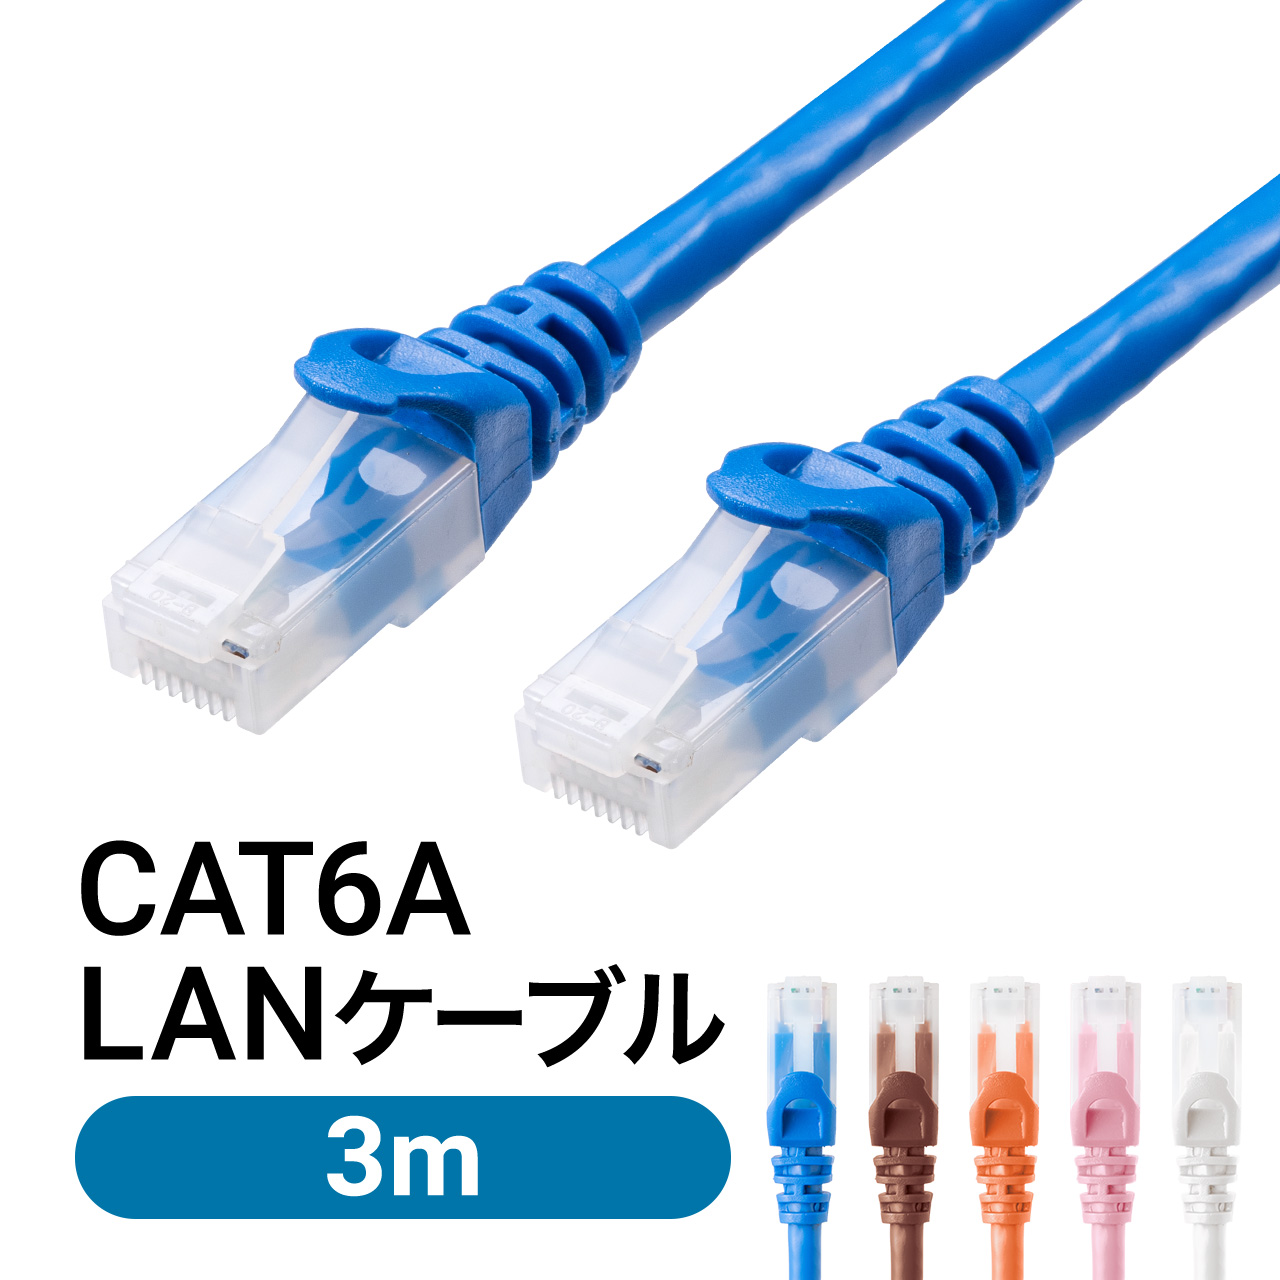 LANケーブル CAT6A 3m カテゴリ6A カテ6A ランケーブル 通信ケーブル